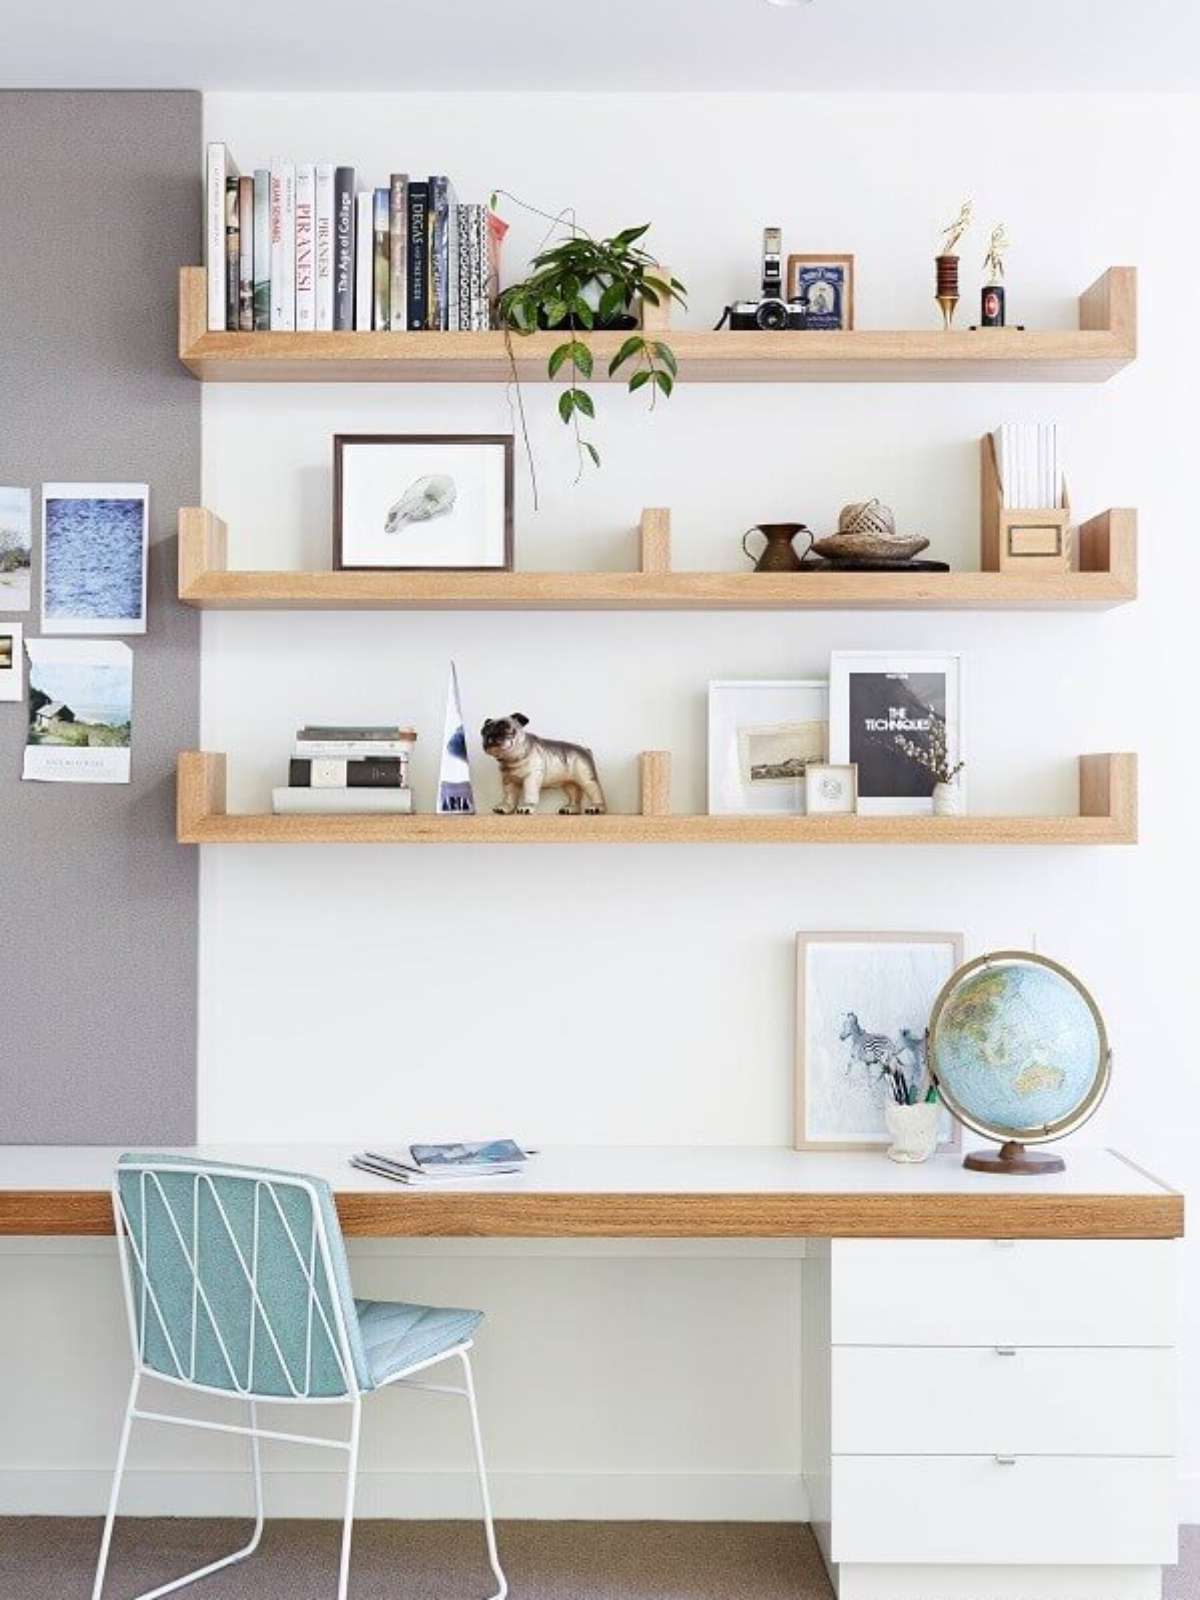 armario escritorio pinterest - Pesquisa Google  Home office decor, Home  office space, House interior